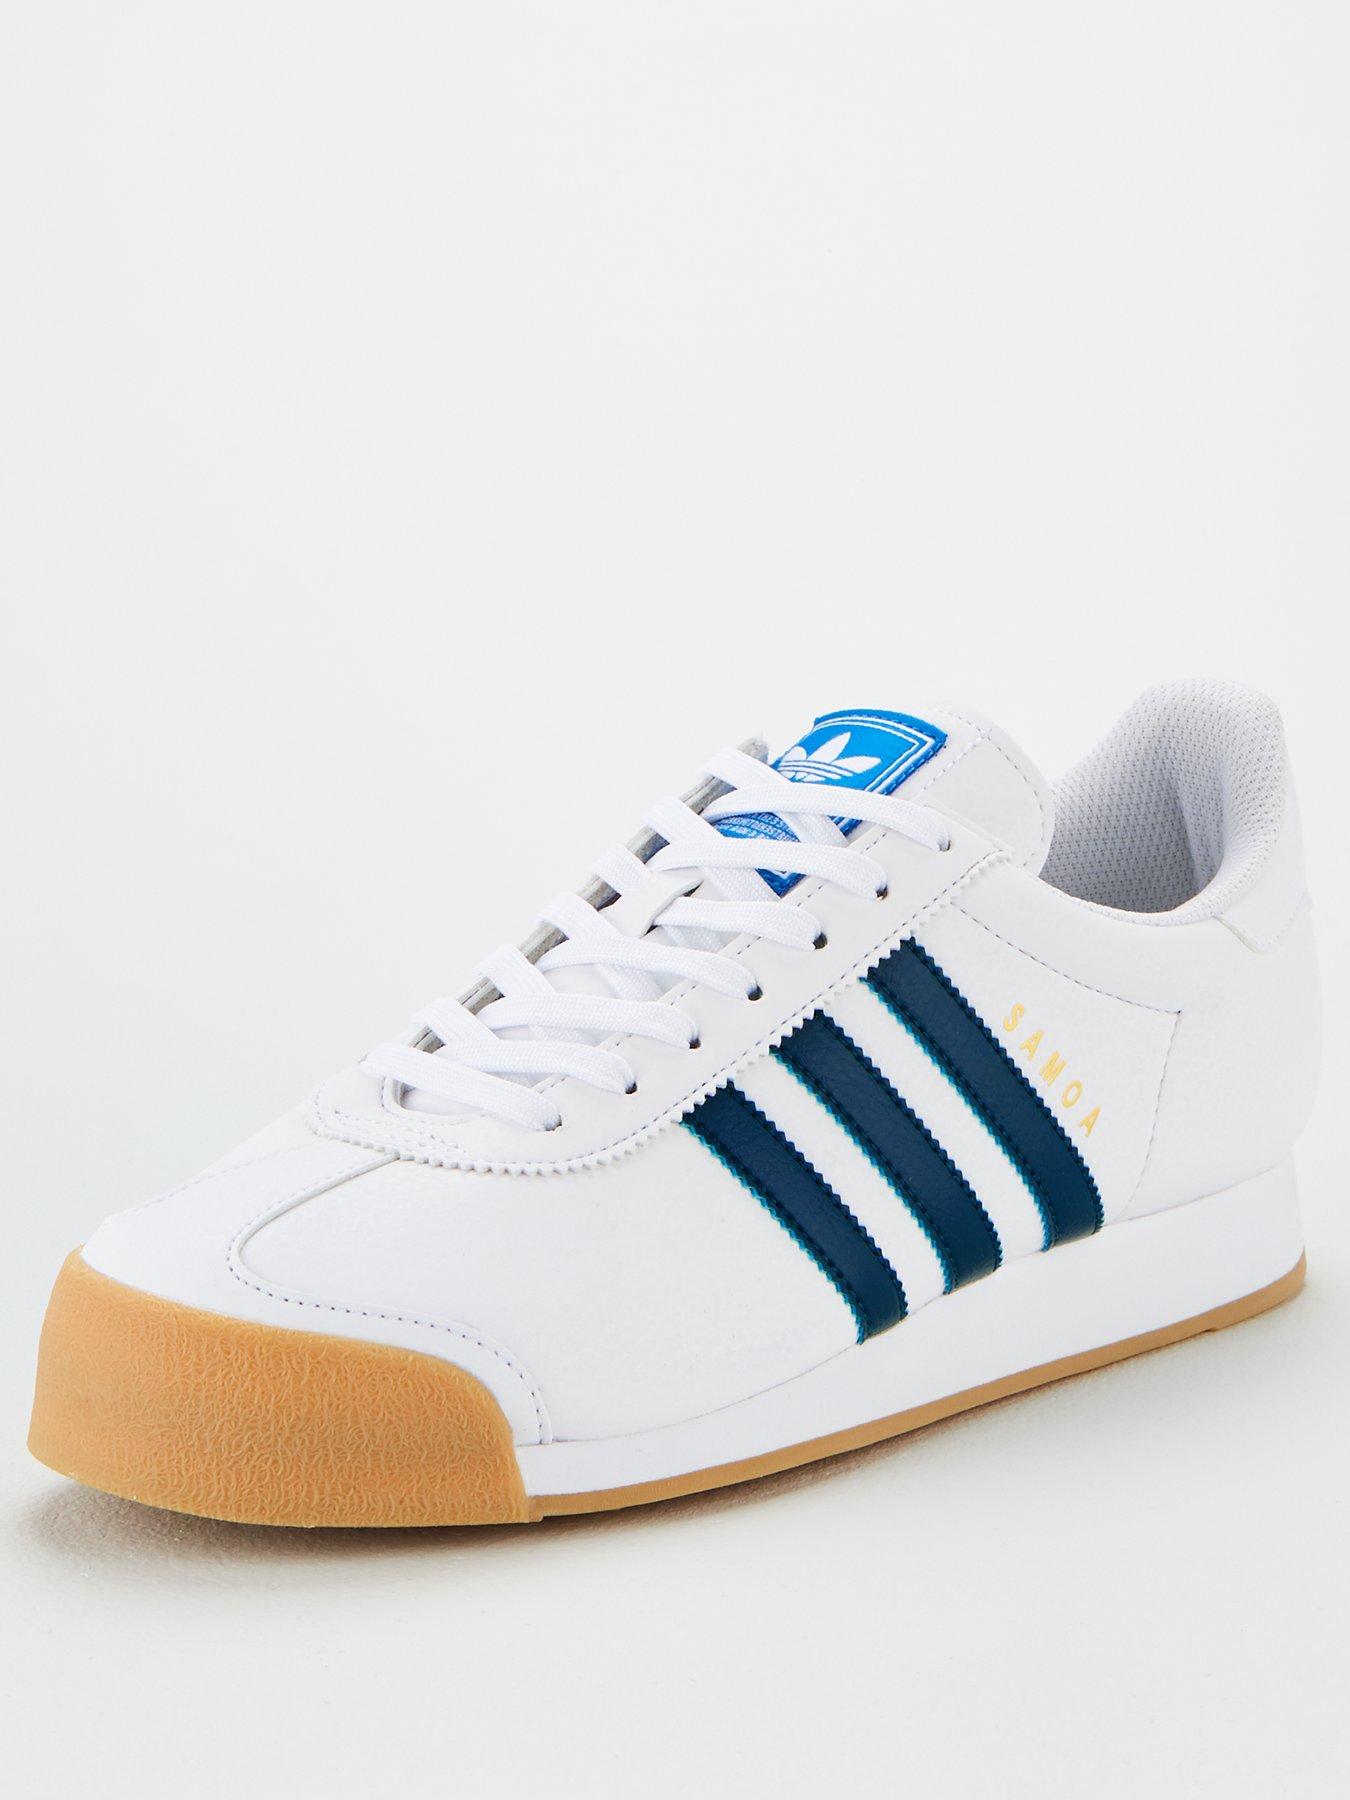 adidas samoa white and blue